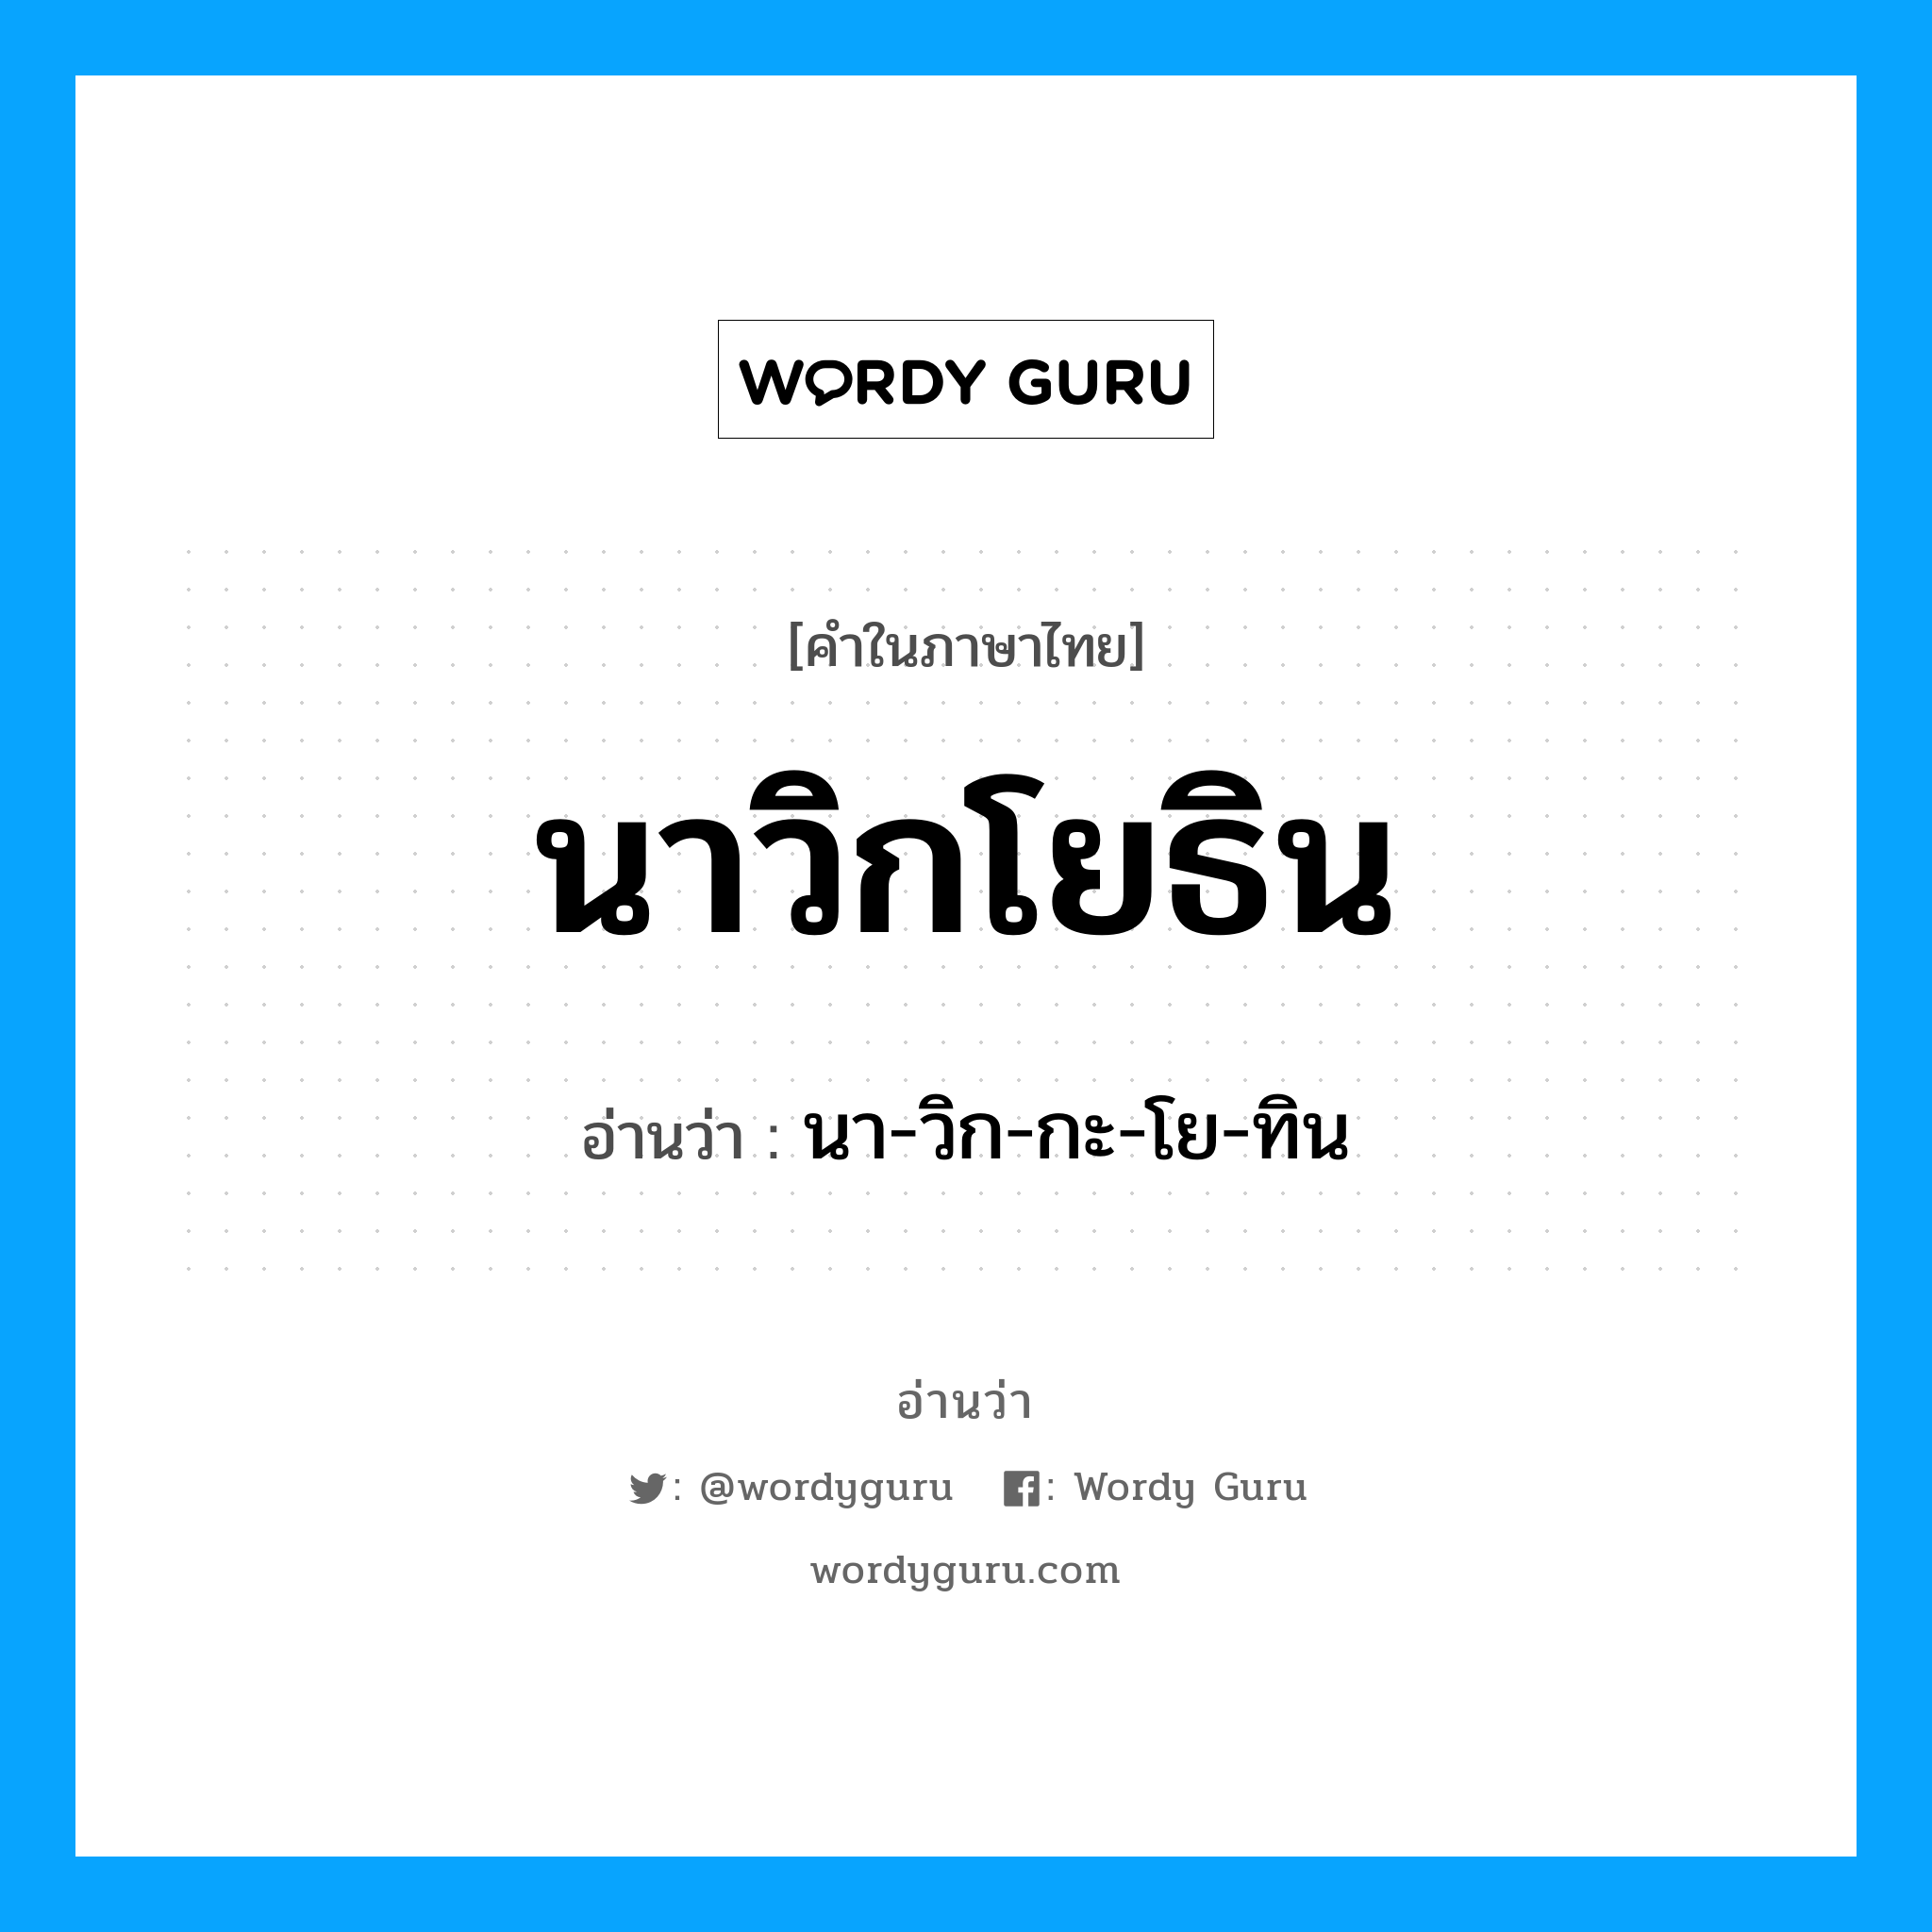 นา-วิก-กะ-โย-ทิน เป็นคำอ่านของคำไหน?, คำในภาษาไทย นา-วิก-กะ-โย-ทิน อ่านว่า นาวิกโยธิน